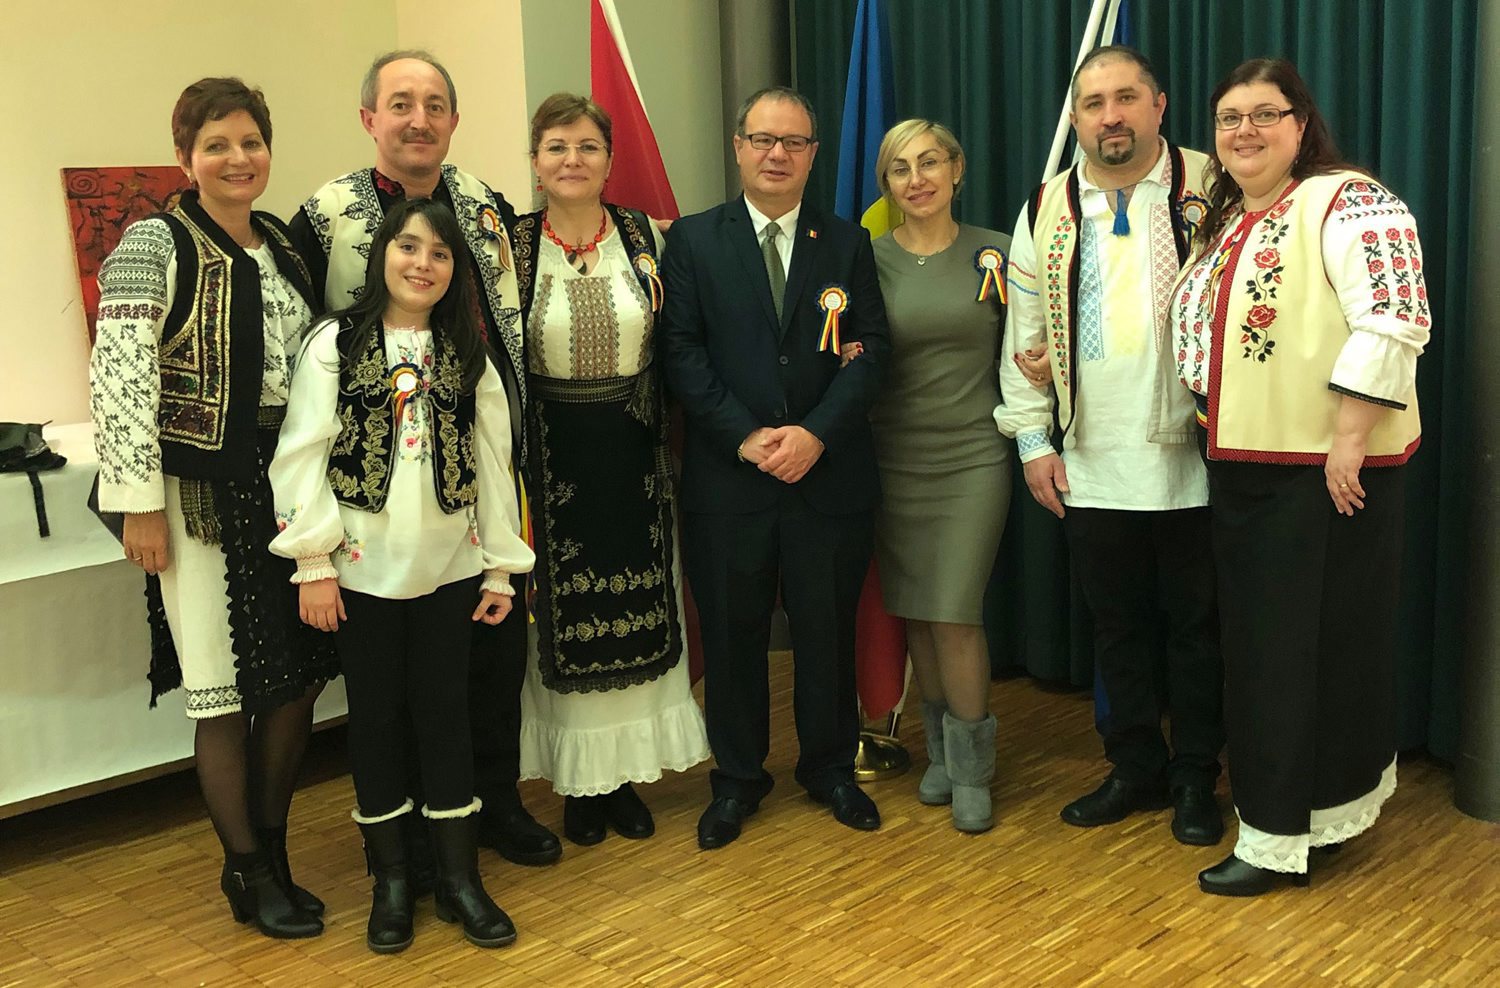 L'ambassadeur de Roumanie en Suisse, entouré par le comité d'organisation des célébrations, à La Neuveville, du centenaire de l'unification de la Roumanie.